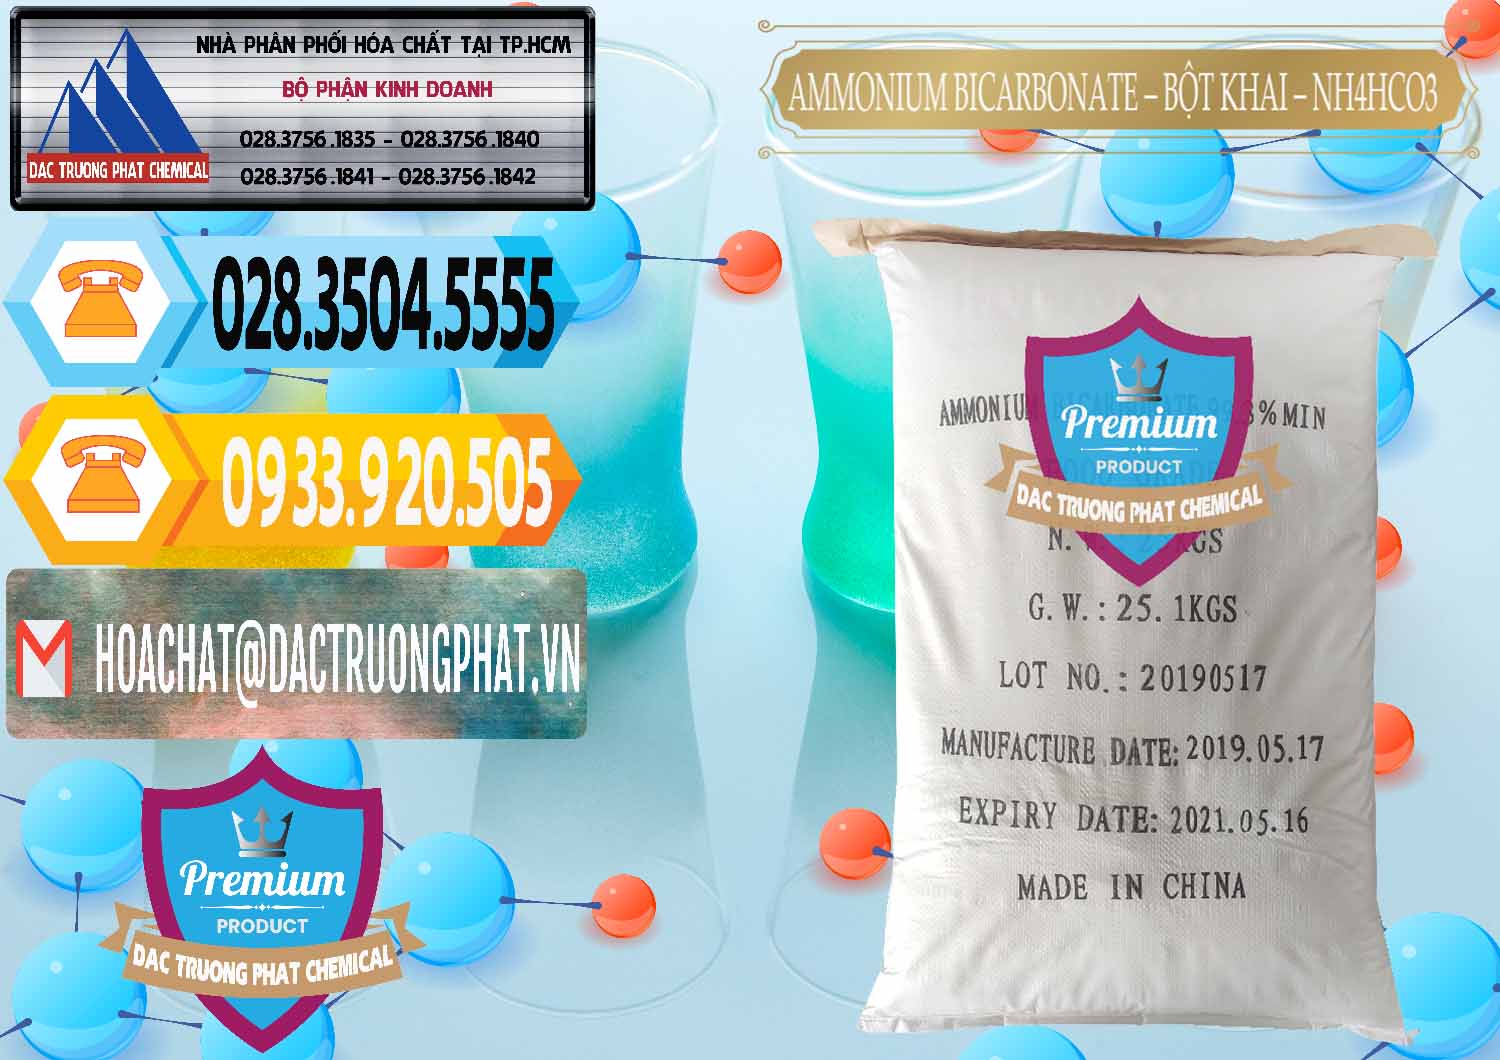 Nơi chuyên bán & cung cấp Ammonium Bicarbonate - Bột Khai Food Grade Trung Quốc China - 0018 - Công ty chuyên kinh doanh - cung cấp hóa chất tại TP.HCM - hoachattayrua.net